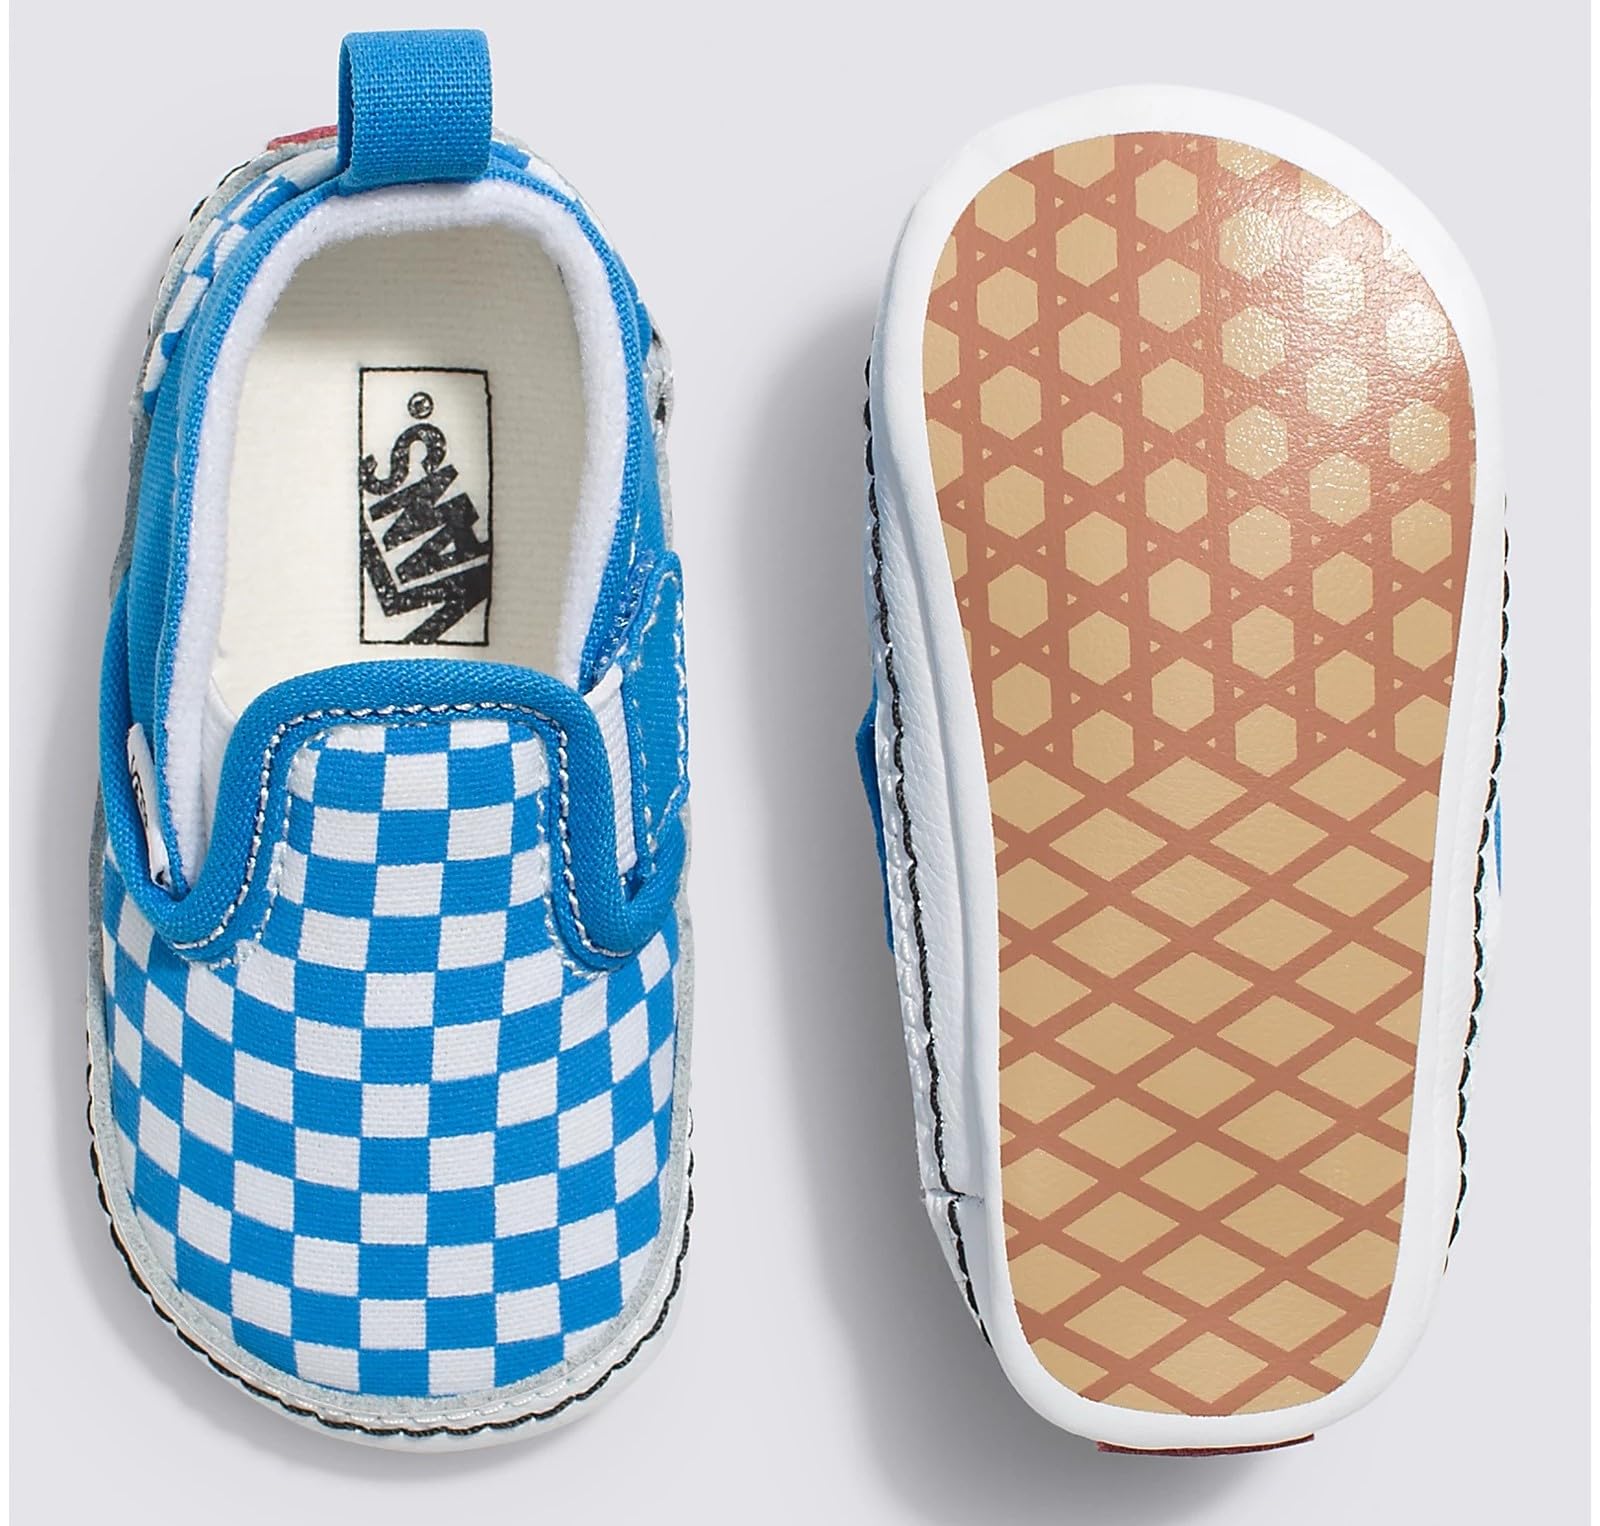 Vans Infant Slip-On V Crib Sneakers (Brilliant Blue/True White, 3)